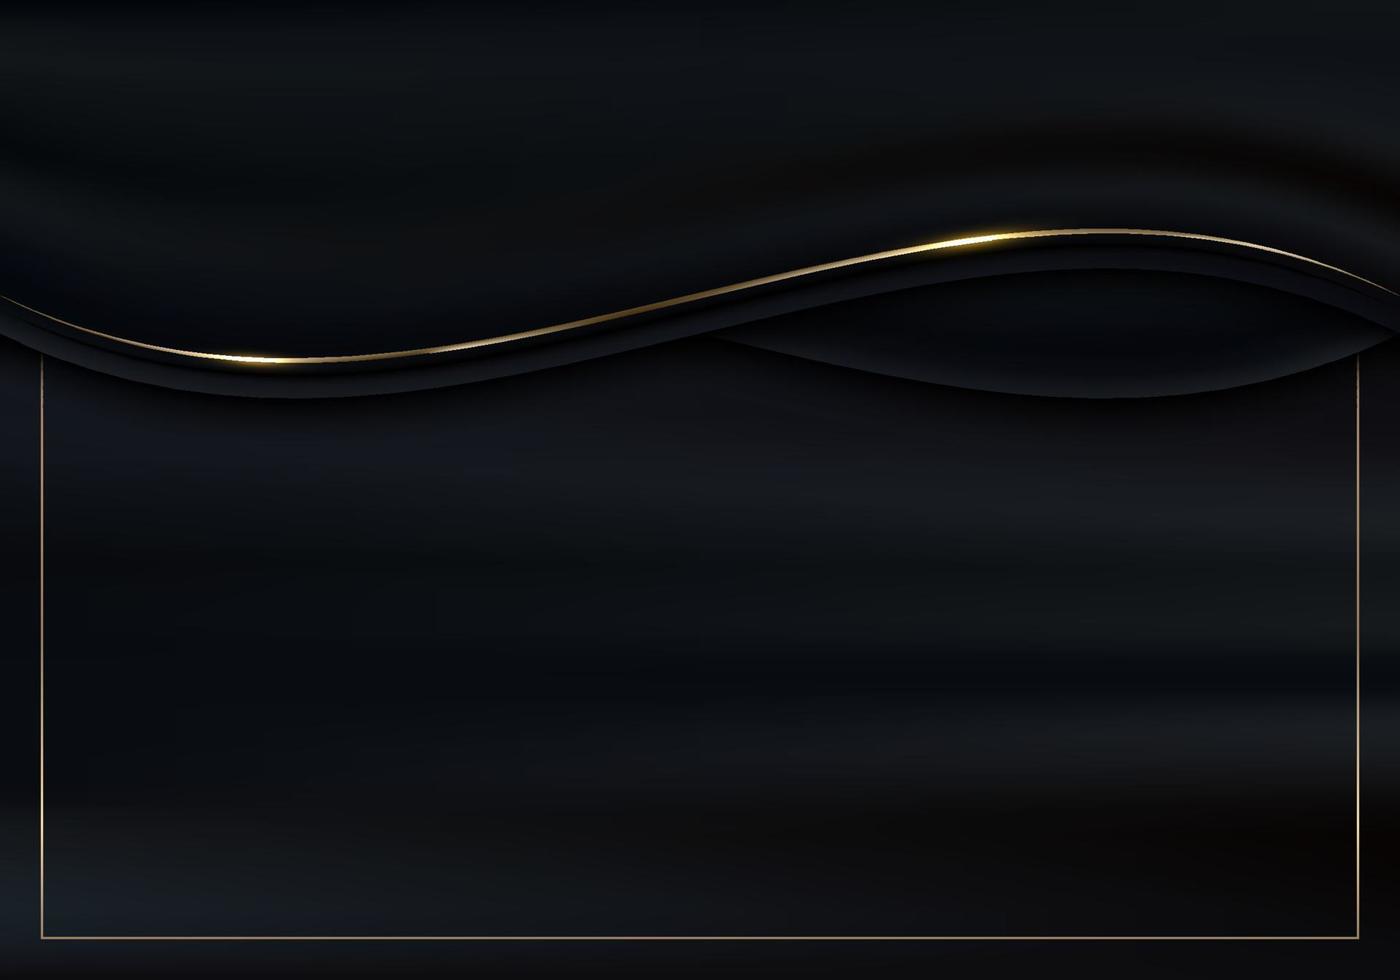 Abstrakte 3D-Luxus-Schwarz-Farbstoff-Satin-Wellenlinien mit glänzender goldener geschwungener Liniendekoration und goldener Rahmen-Glitzerbeleuchtung auf dunklem Hintergrund vektor